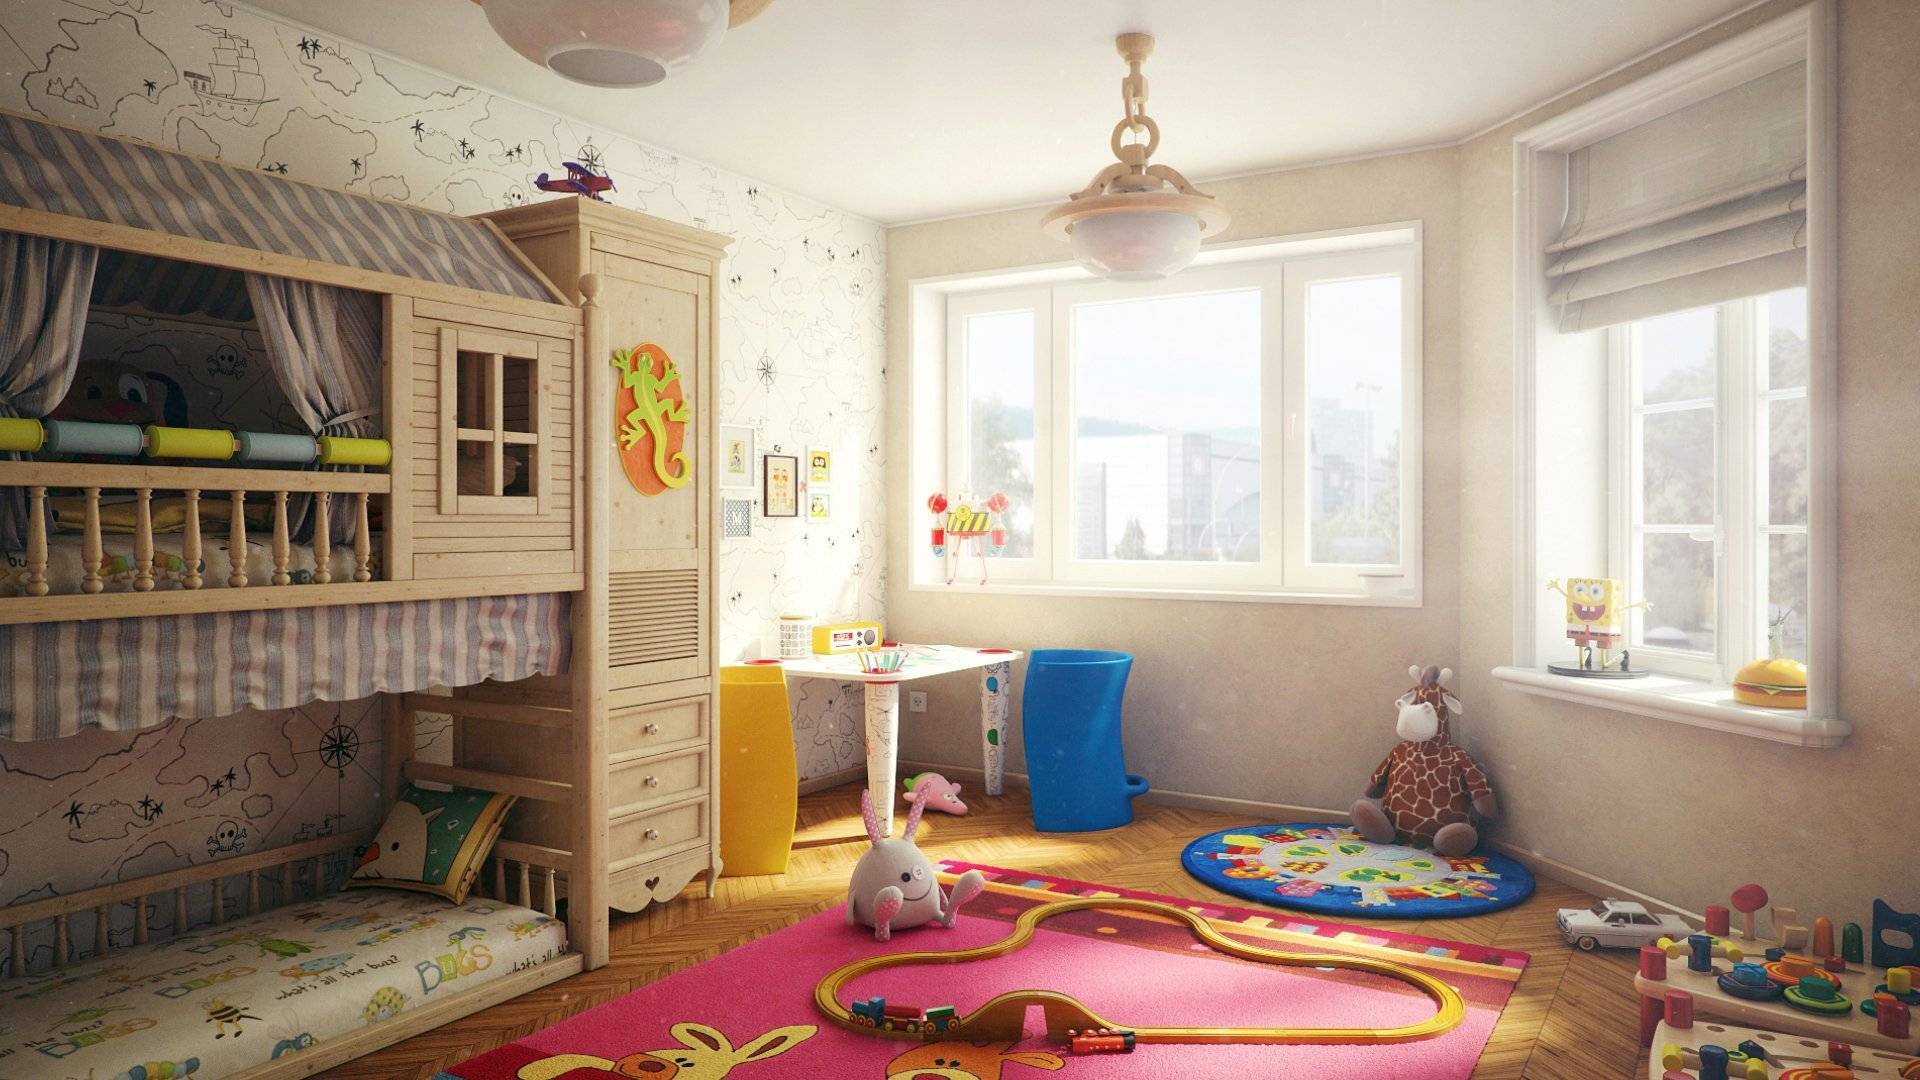 6 способов сделать детскую комнату комфортной и безопасной, не навредив дизайну: новости, квартира, детская комната, оформление, безопасность, советы дизайнера, дизайн и интерьер